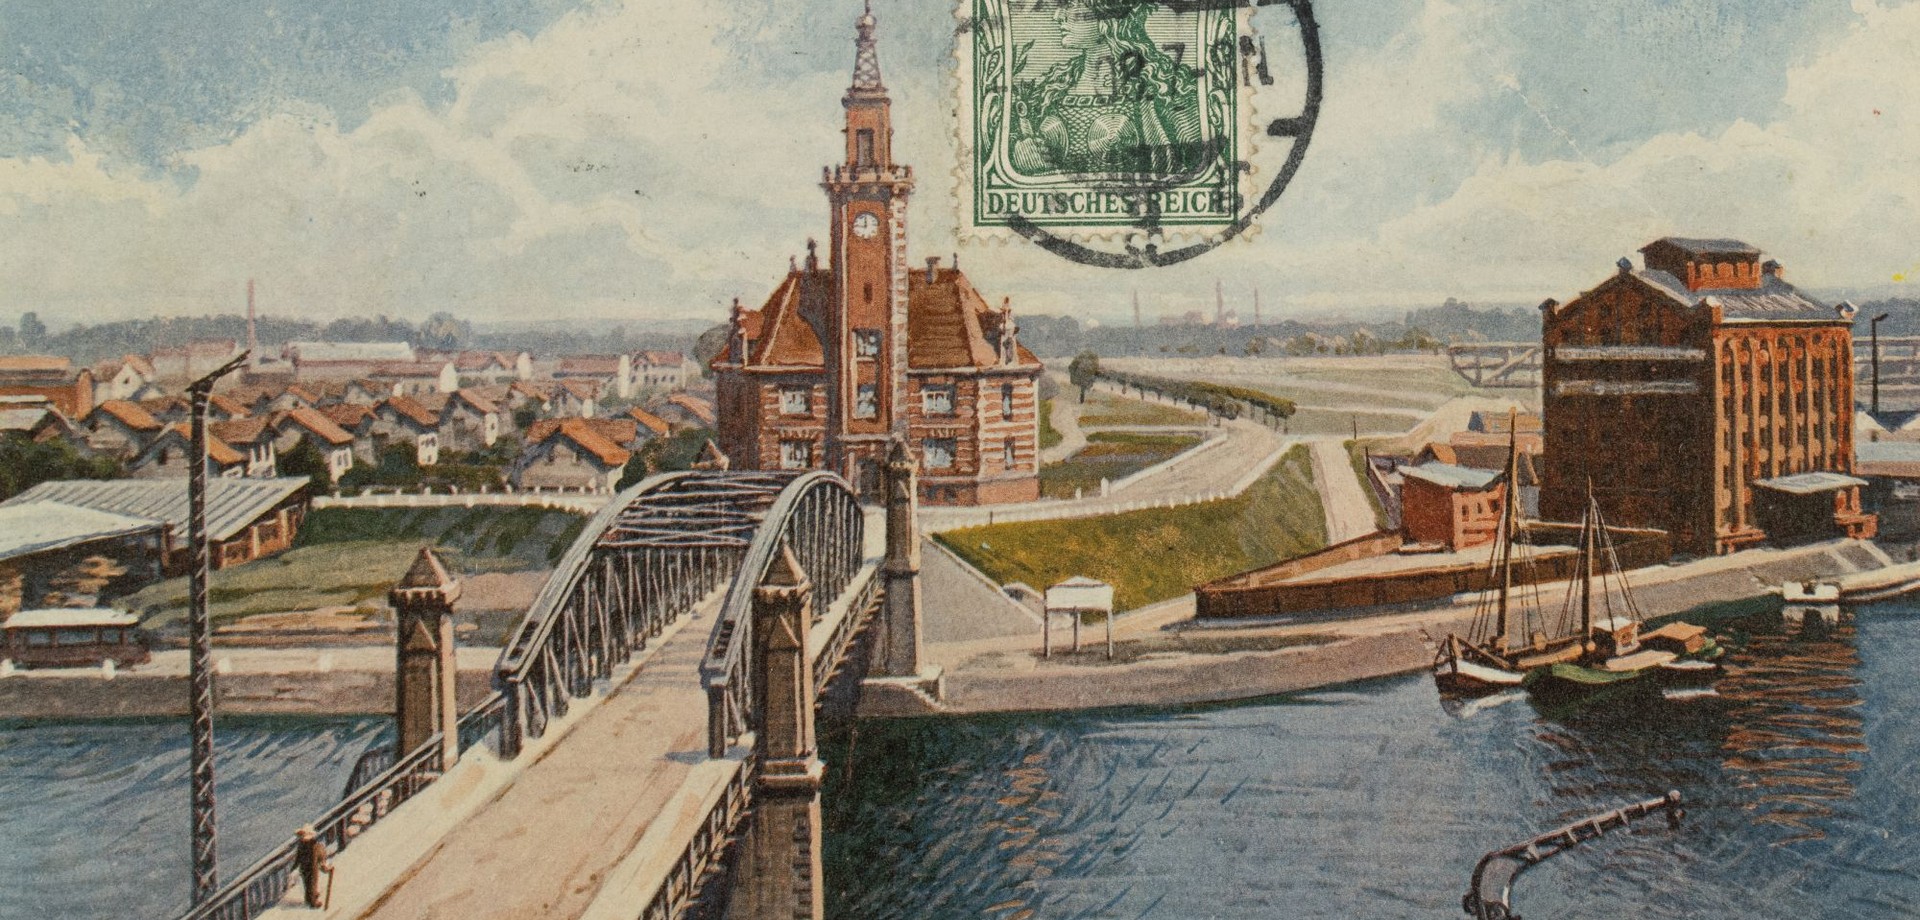 Farbige Ansichtskarte des Dortmunder Hafens aus dem Jahr 1908